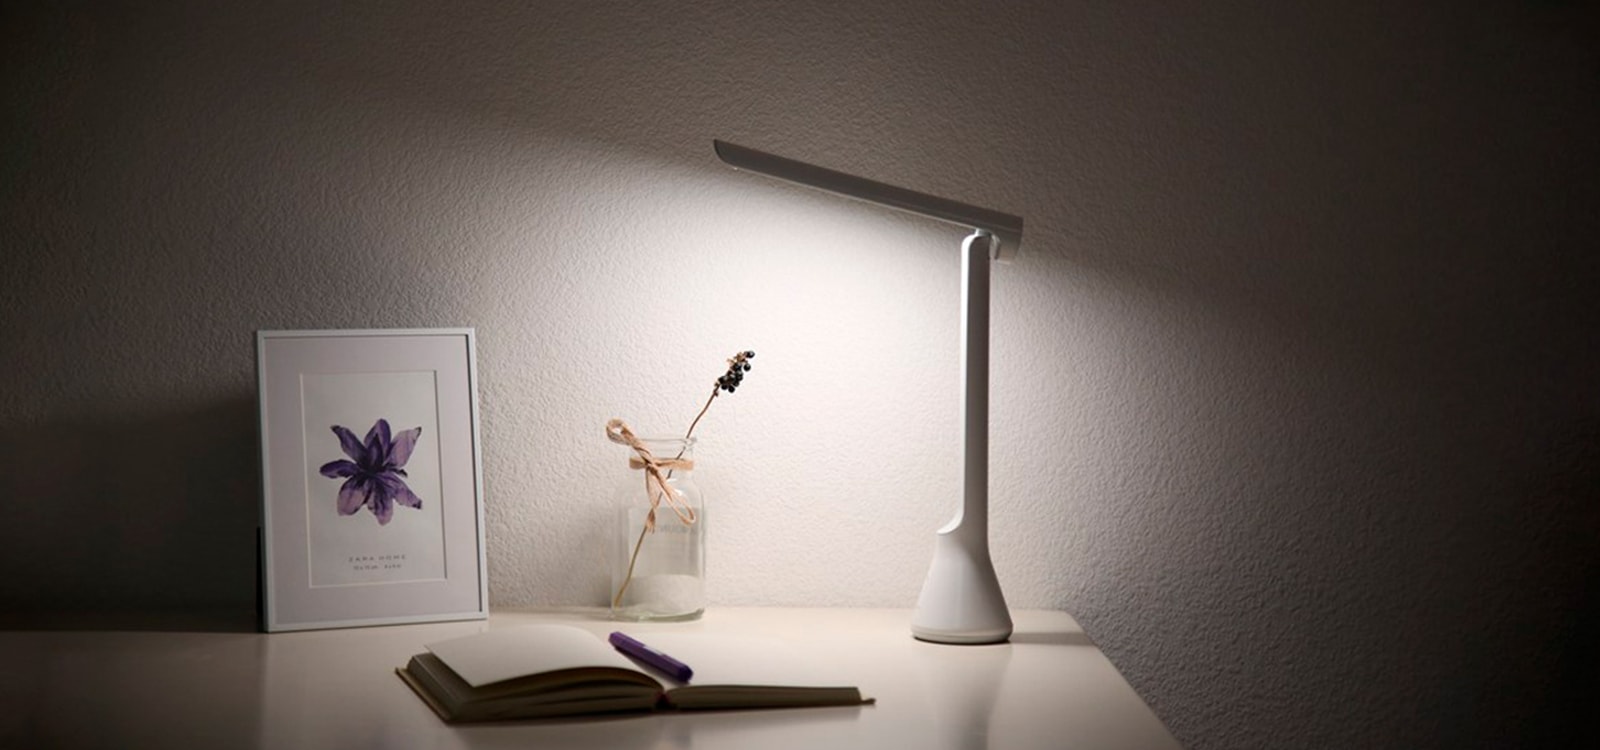 Складная настольная лампа с аккумулятором Yeelight USB Folding Charging Table Lamp YLTD11YL белого цвета